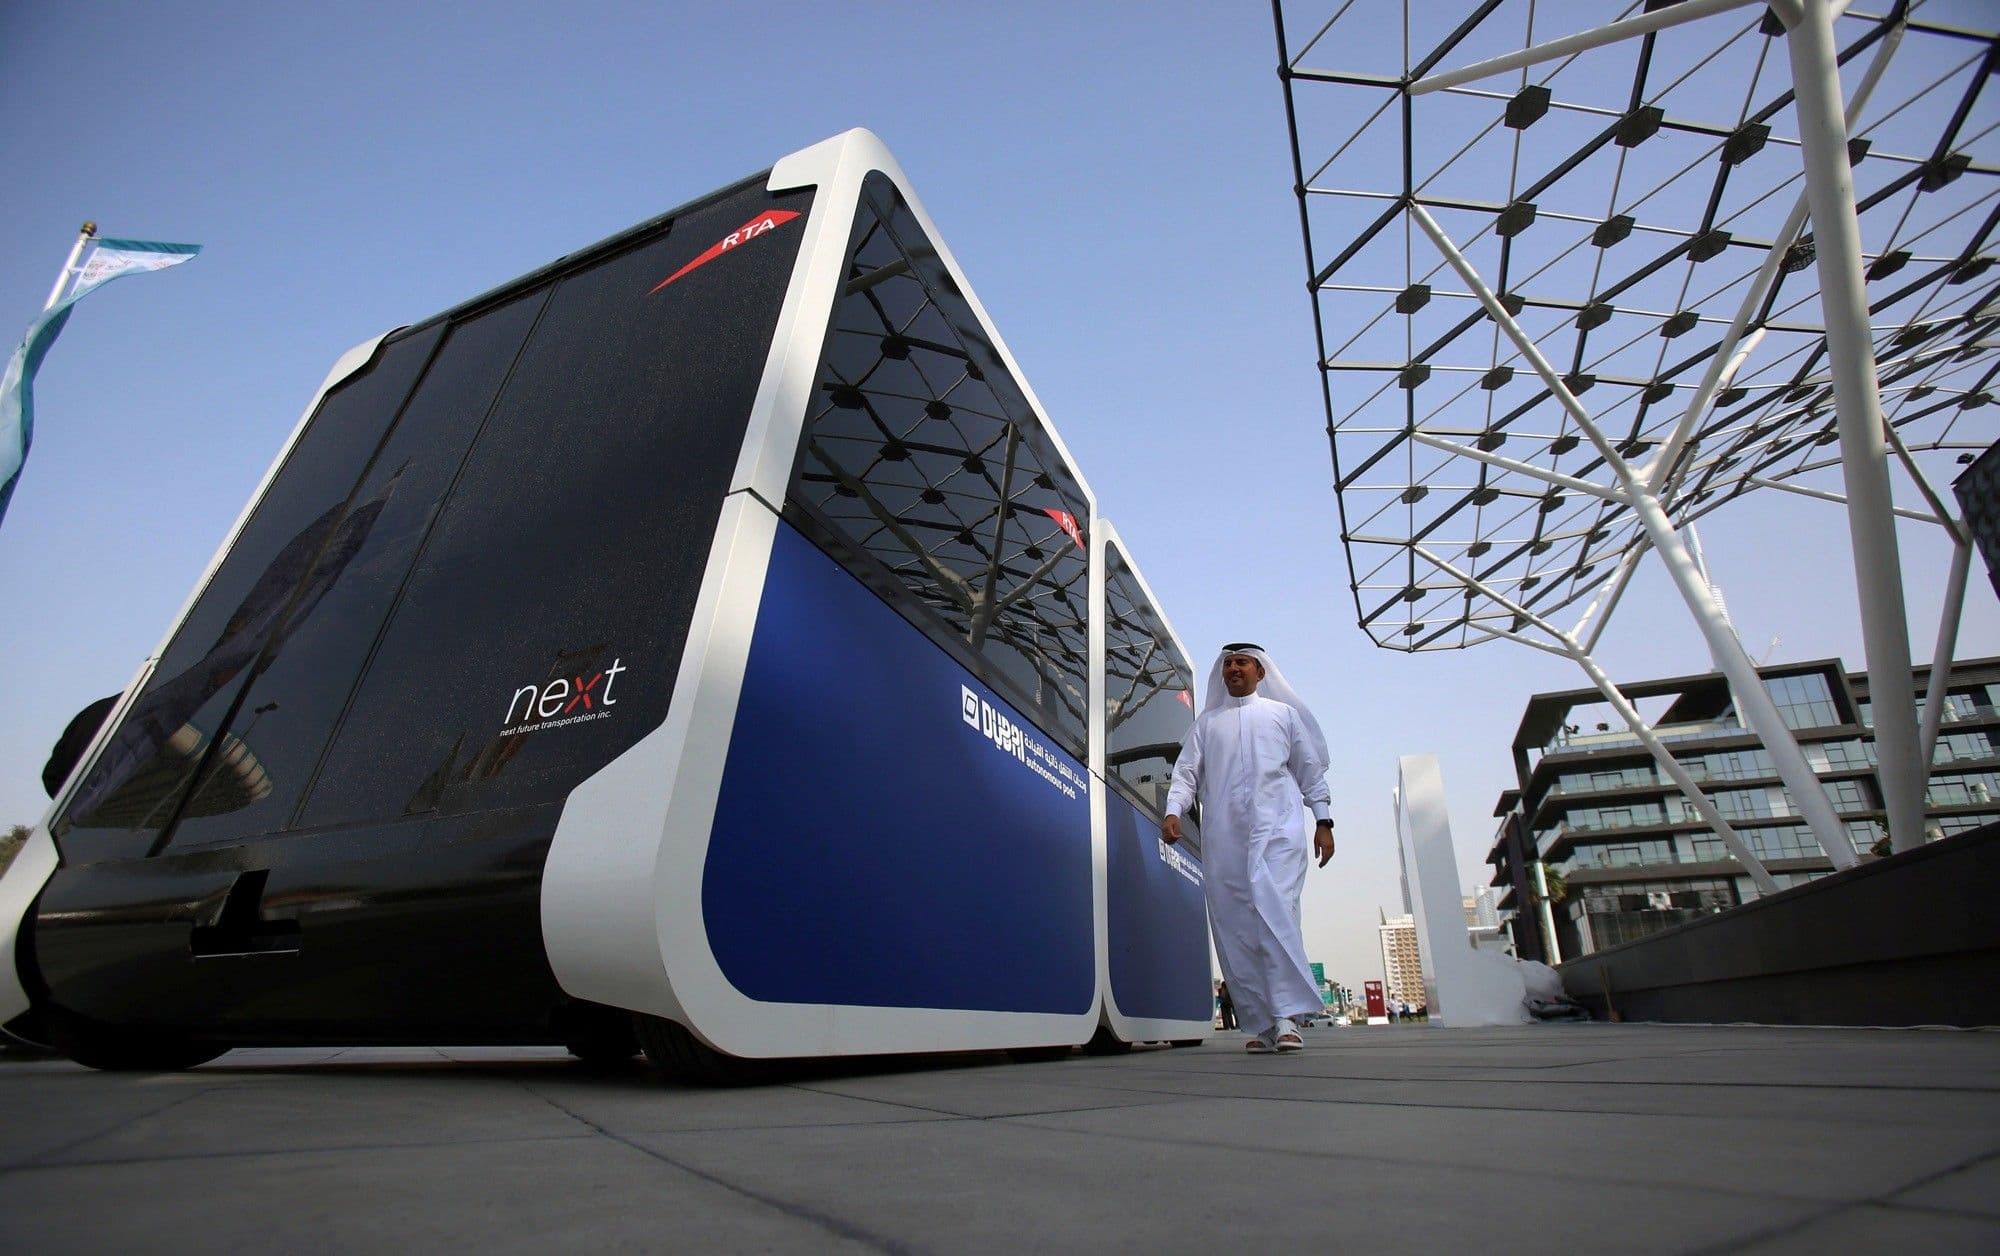 Dubai’s push for self-driving buses